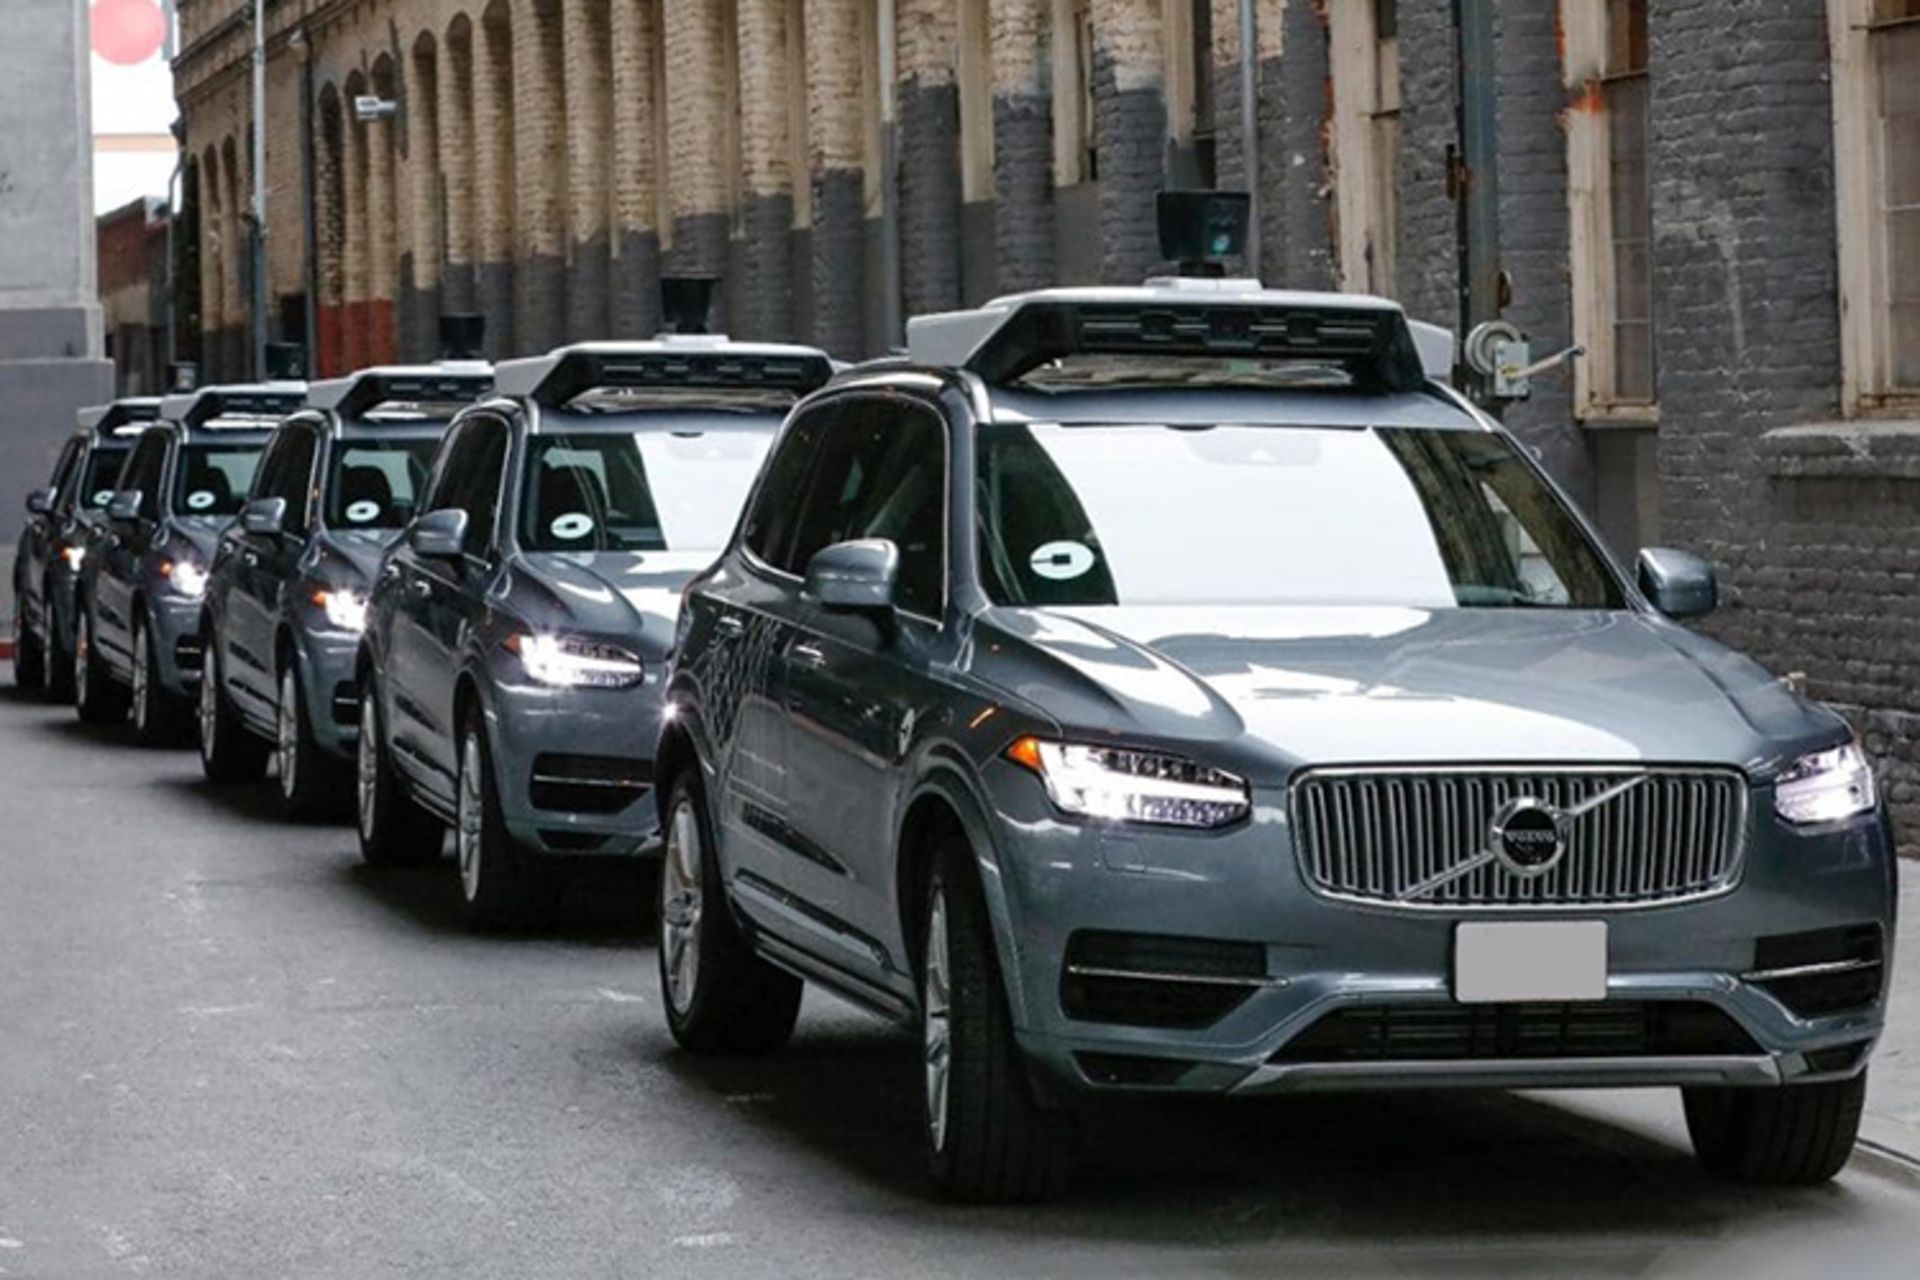 مرجع متخصصين ايران Uber self-driving SUV